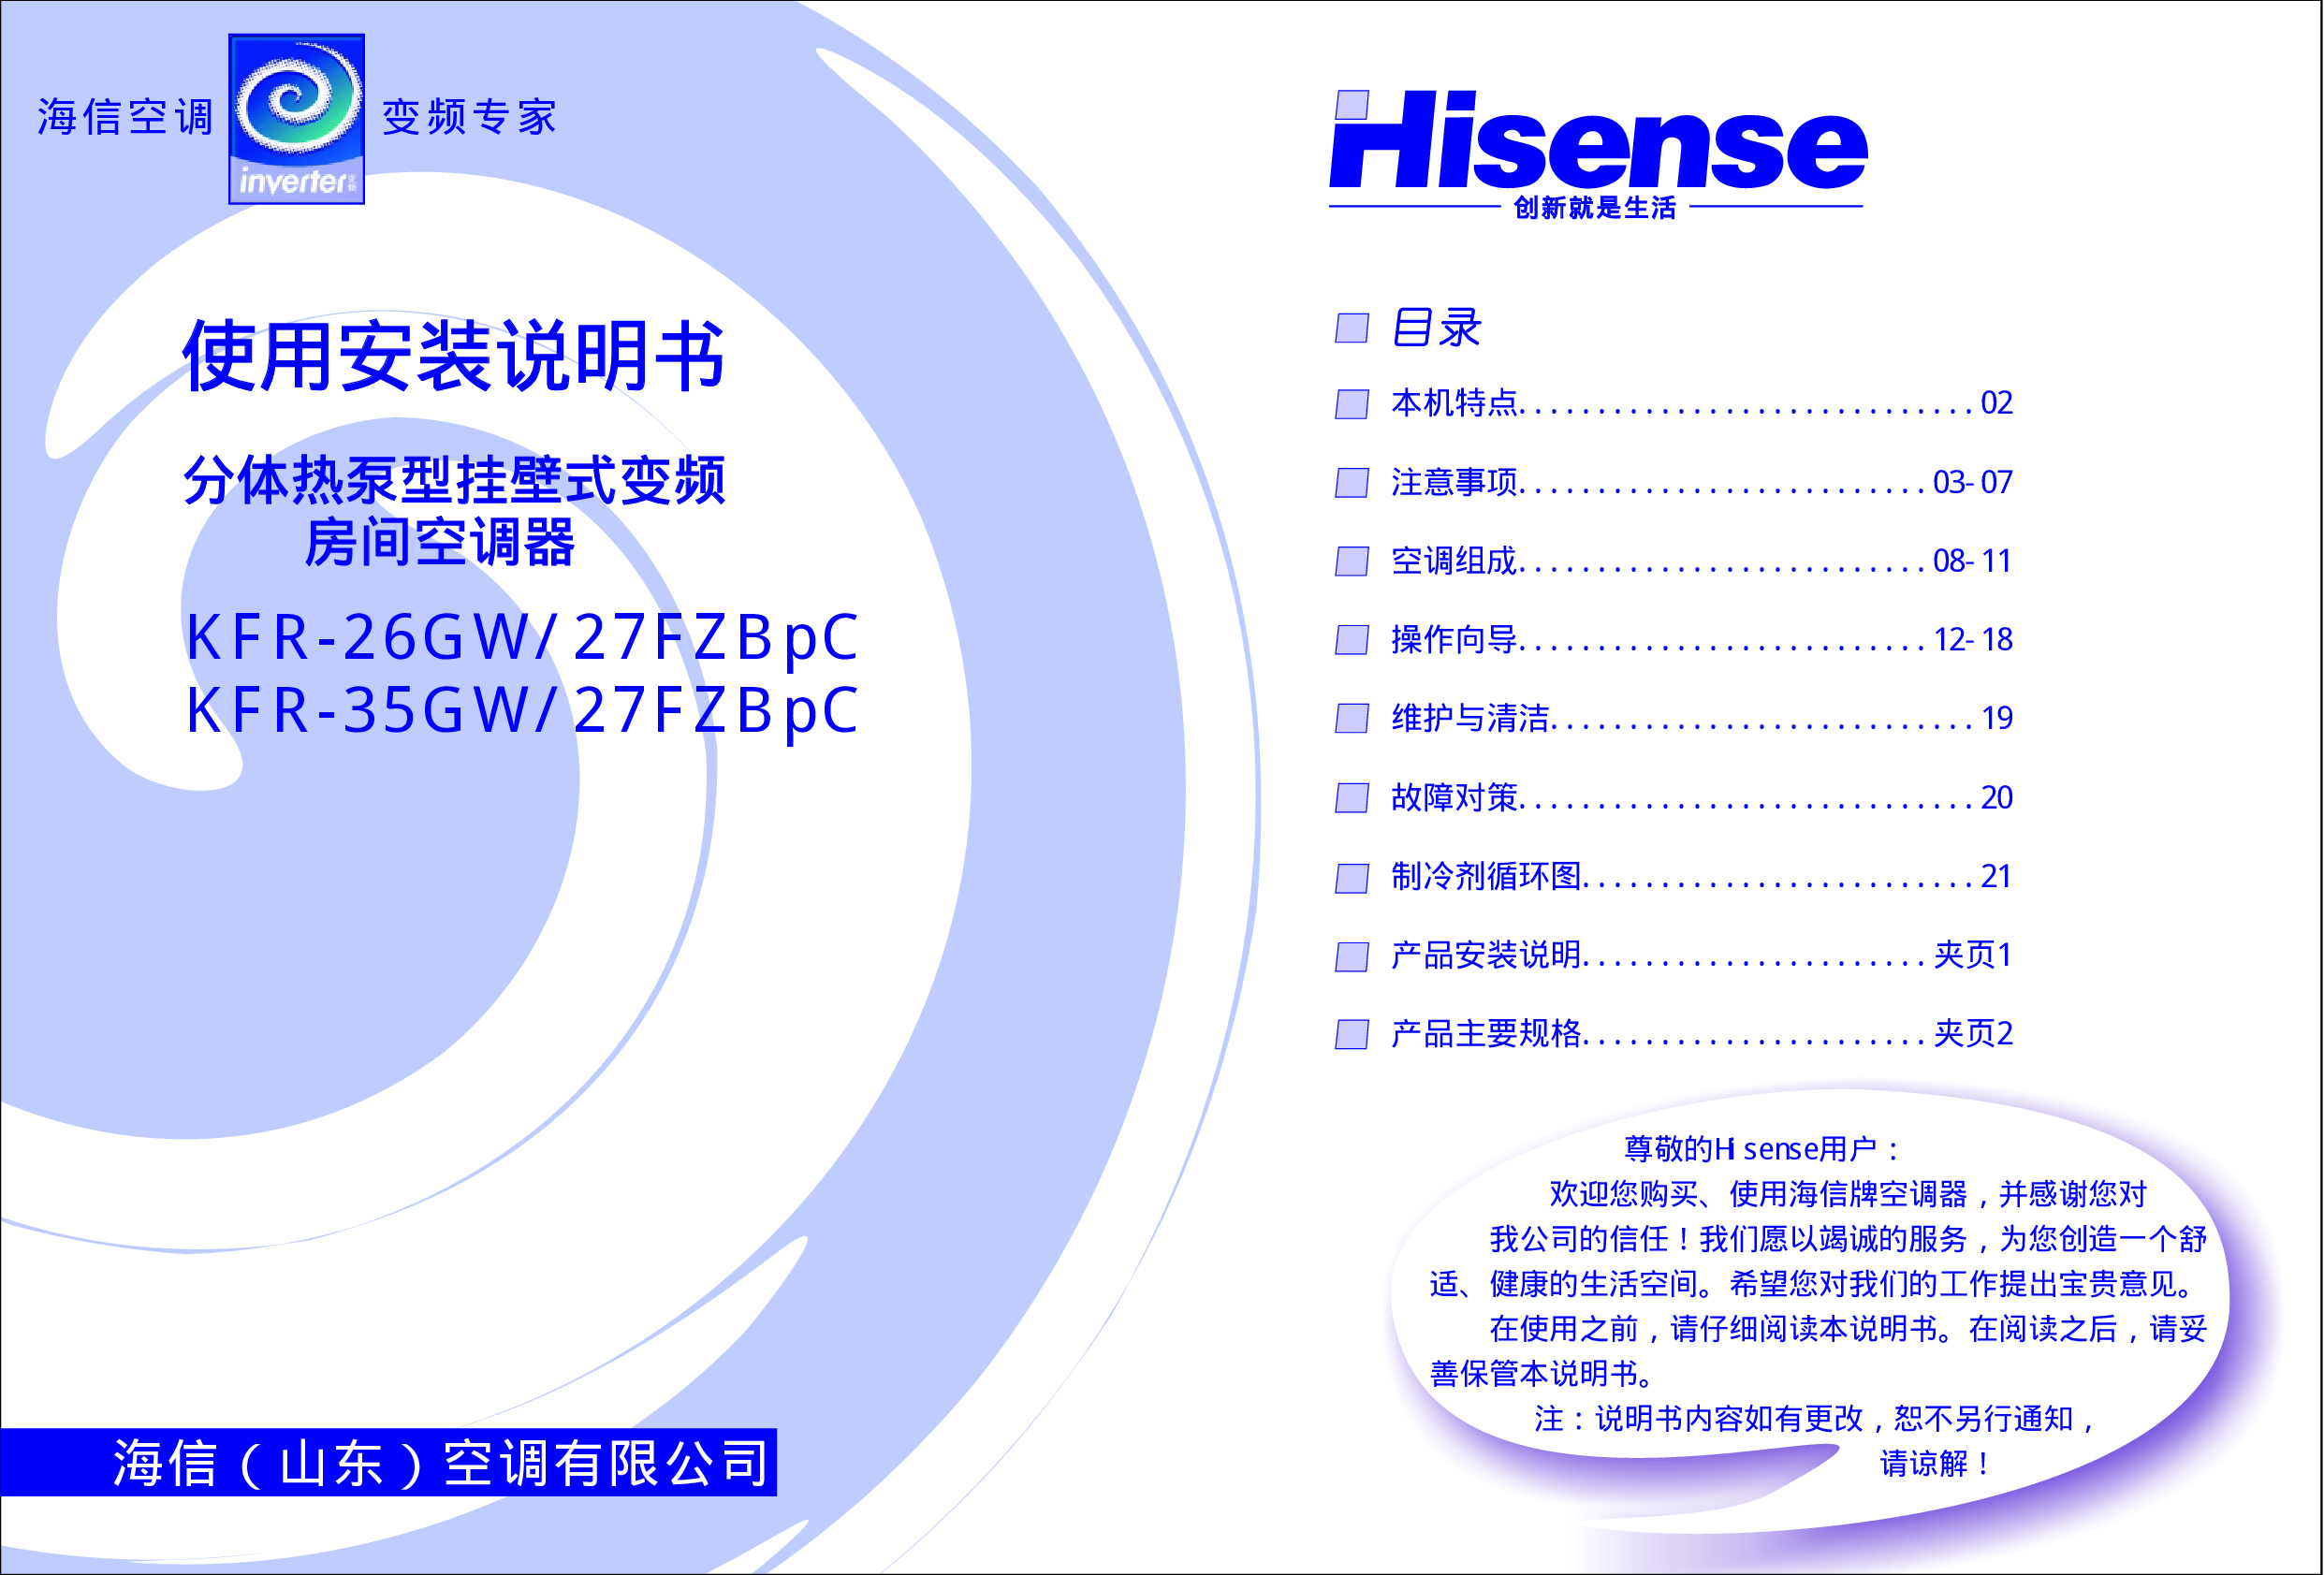 海信 Hisense KFR-26GW/27FZBpC 使用说明书 封面